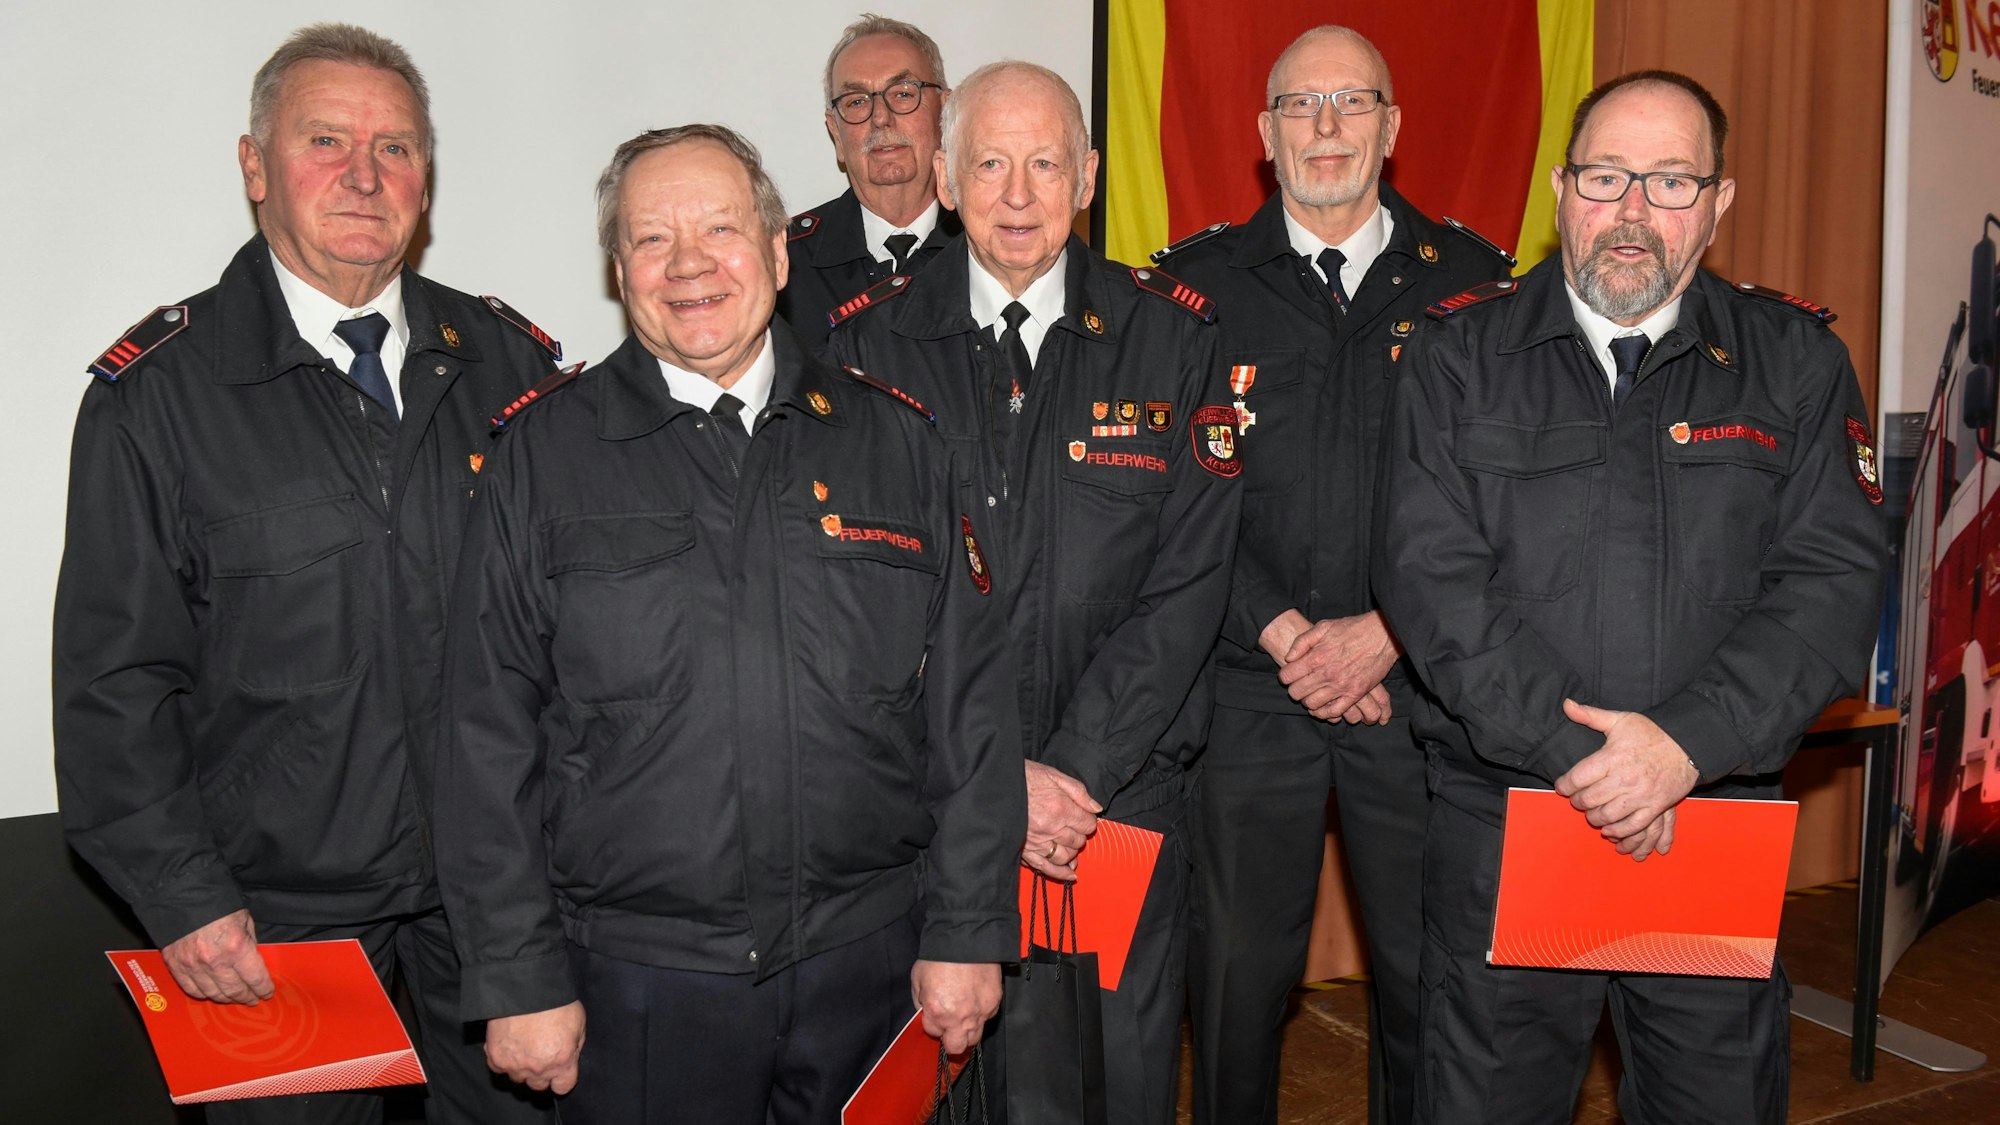 Jahreshauptversammlung der Feuerwehr in Rhein-Erft.